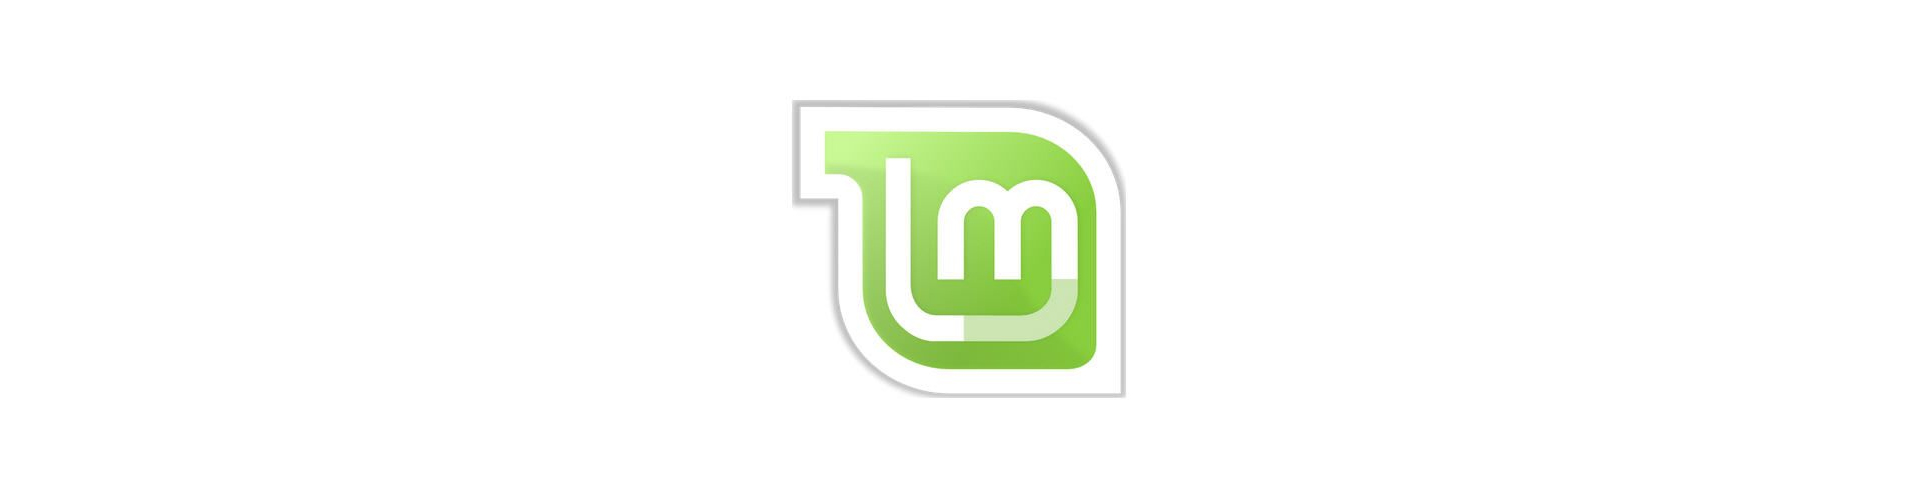 Hostarex blog: Linux Mint nədir?